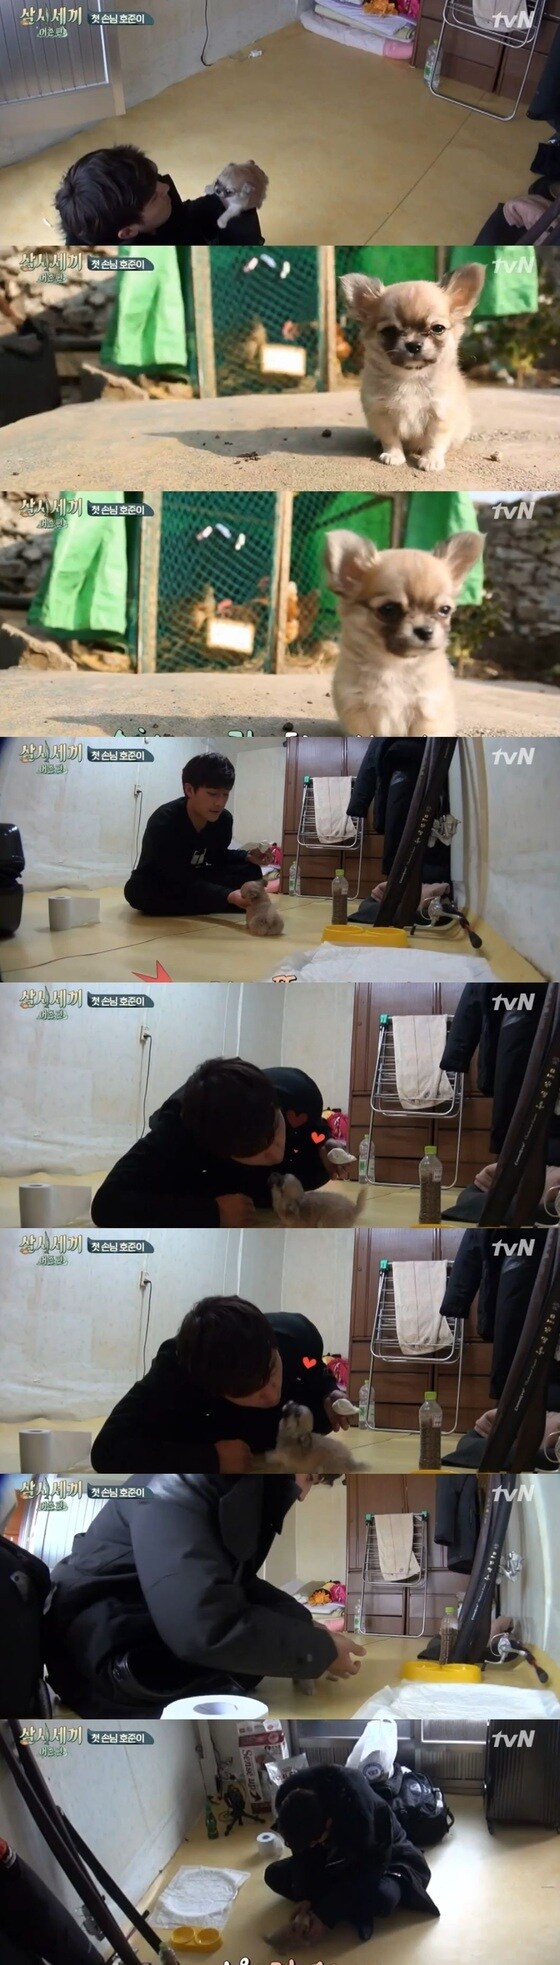 ´삼시세끼´ 손호준이 만재도 마스코트 산체의 매력에 빠졌다.© 뉴스1스포츠 / tvN ´삼시세끼´ 캡처